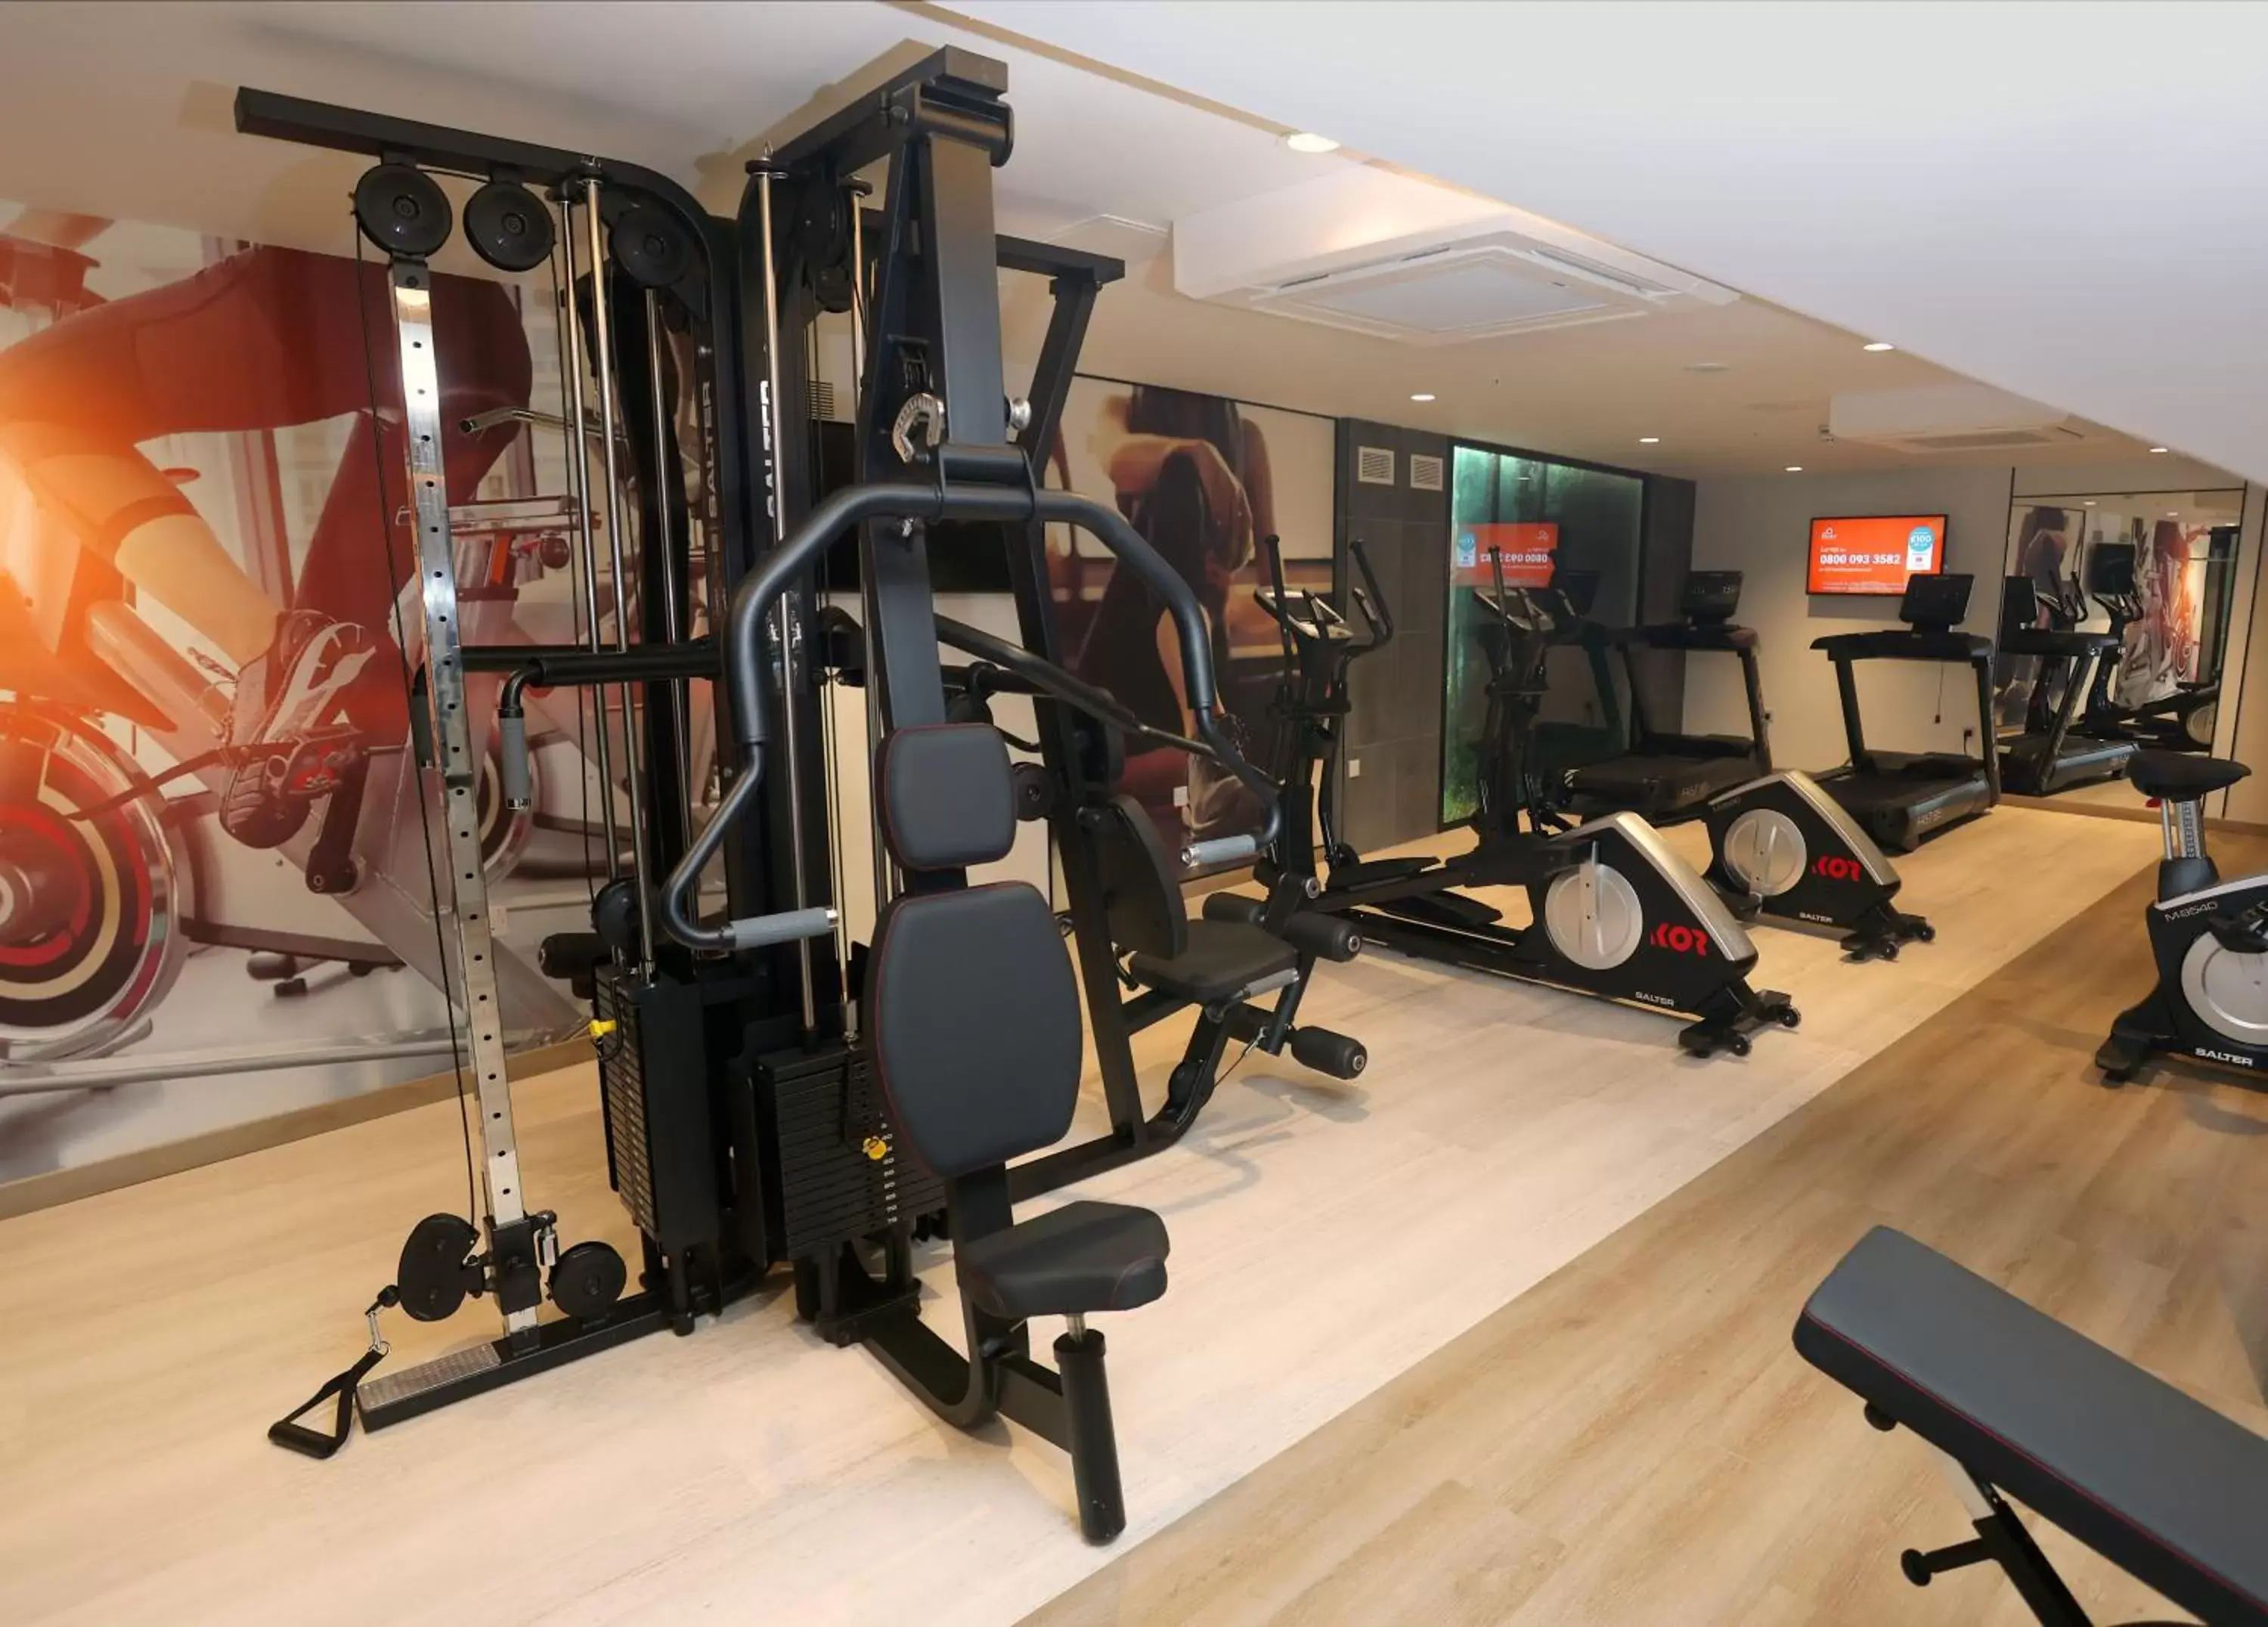 Fitness centre/facilities, Fitness Center/Facilities in Riu Plaza London Victoria